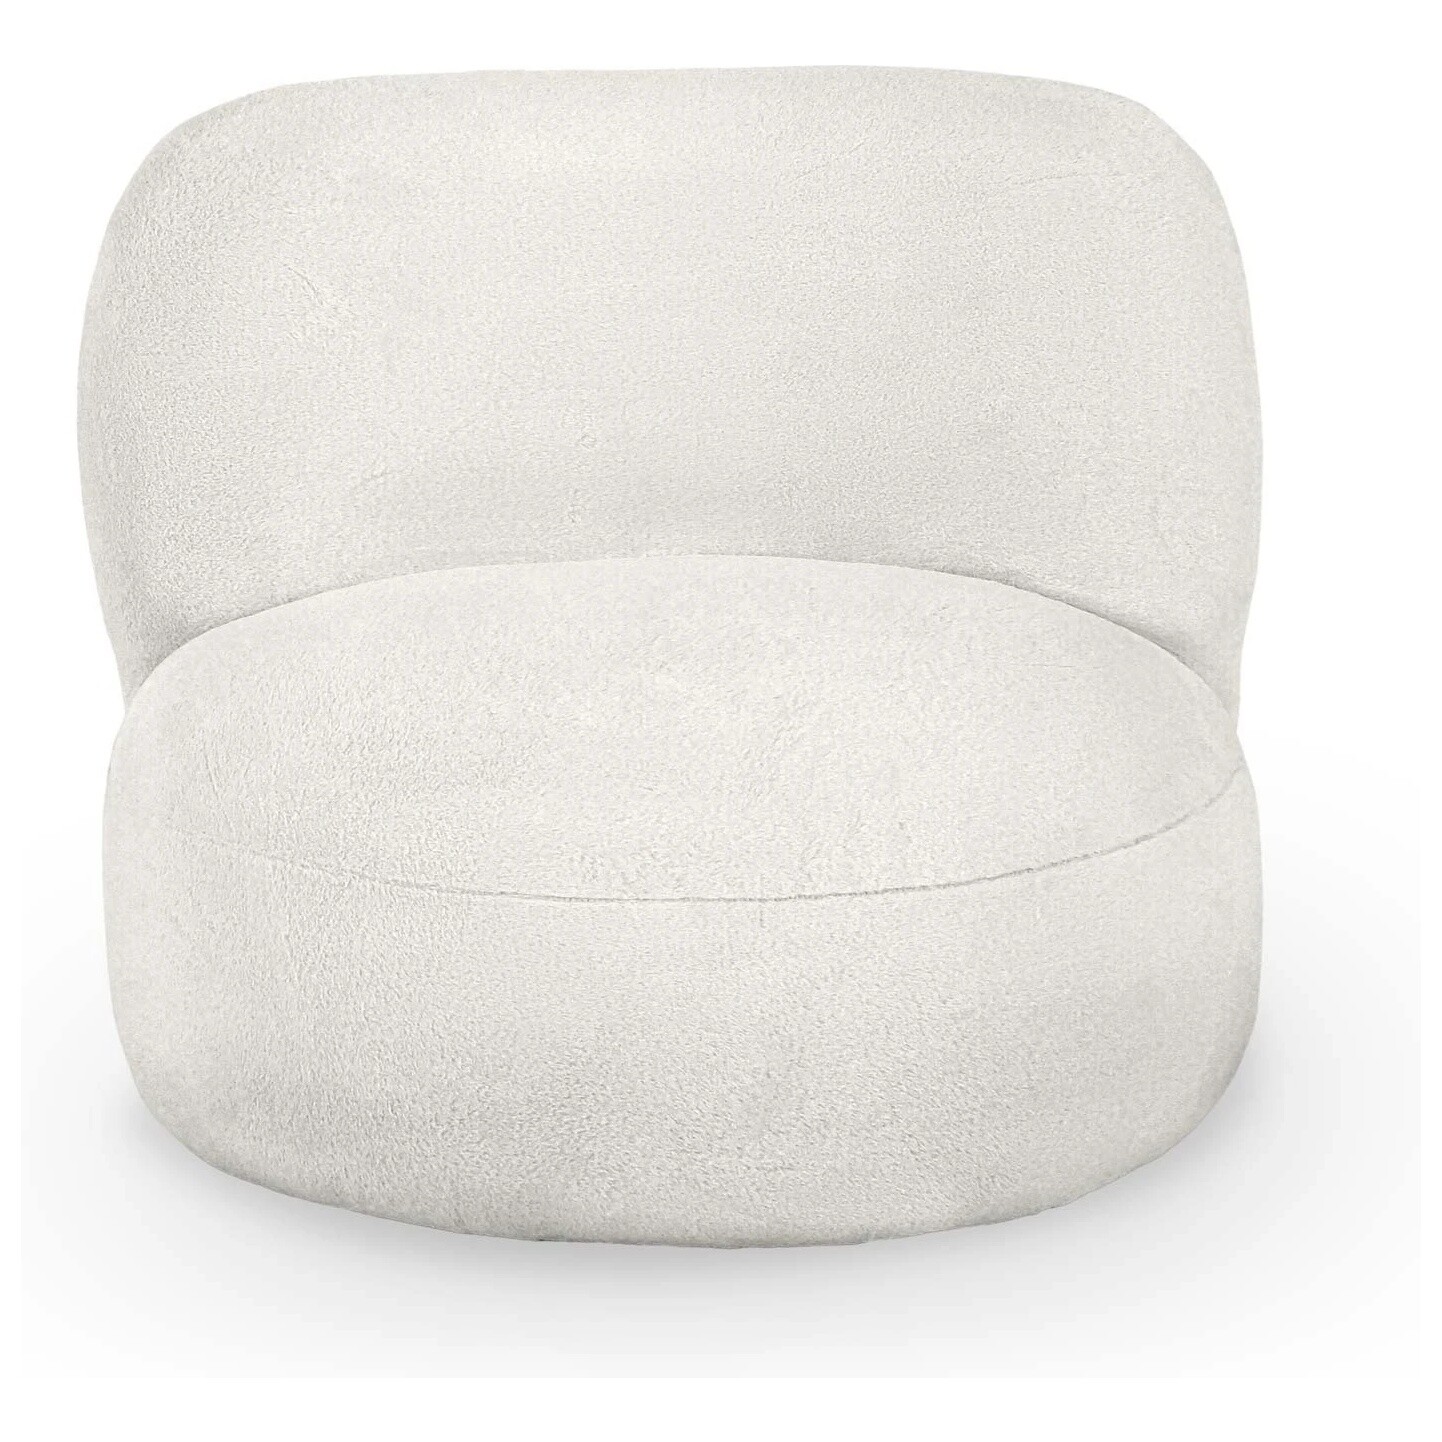 Кресло мягкое круглое без ножек искусственный мех белое Patti 51-1 beige